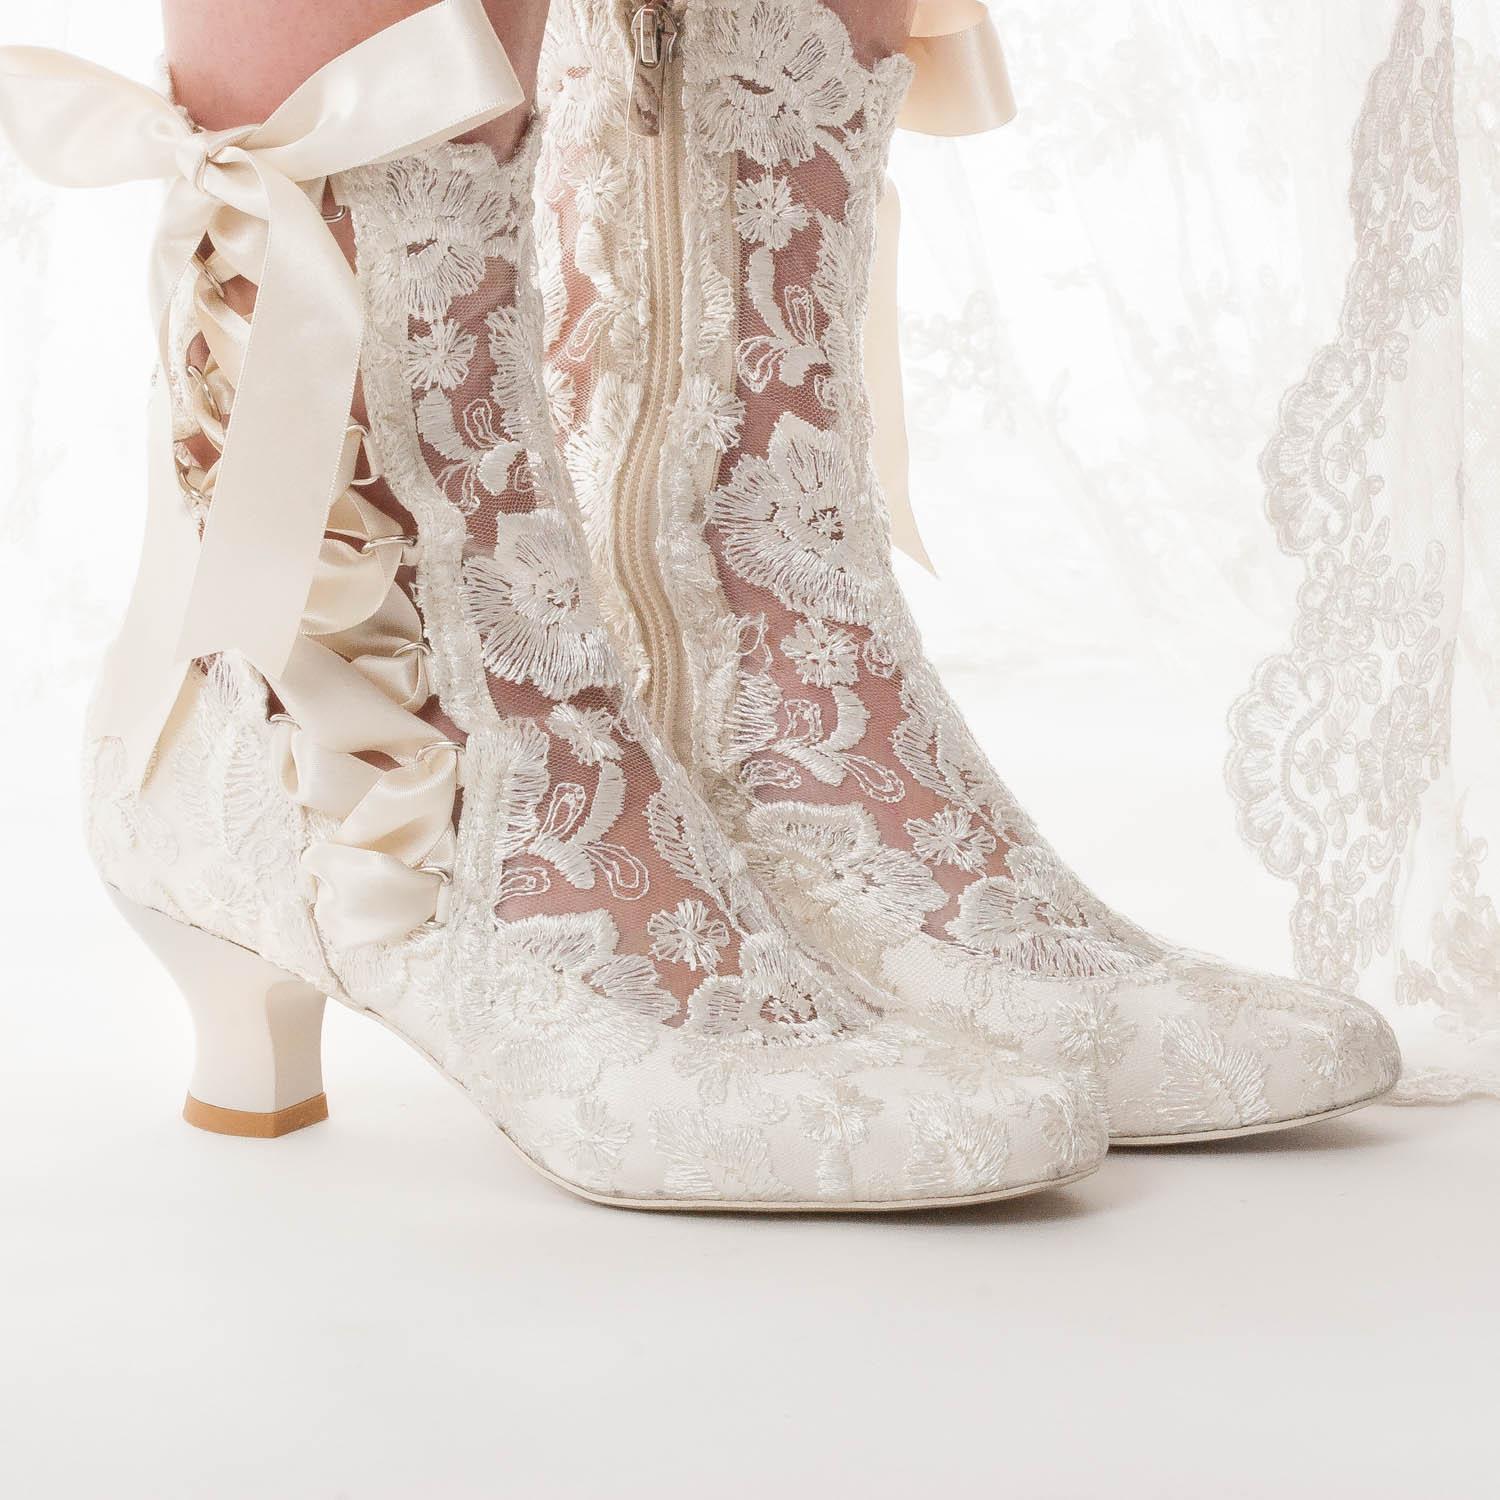 Victorian Boots - Lizzie Elliot 